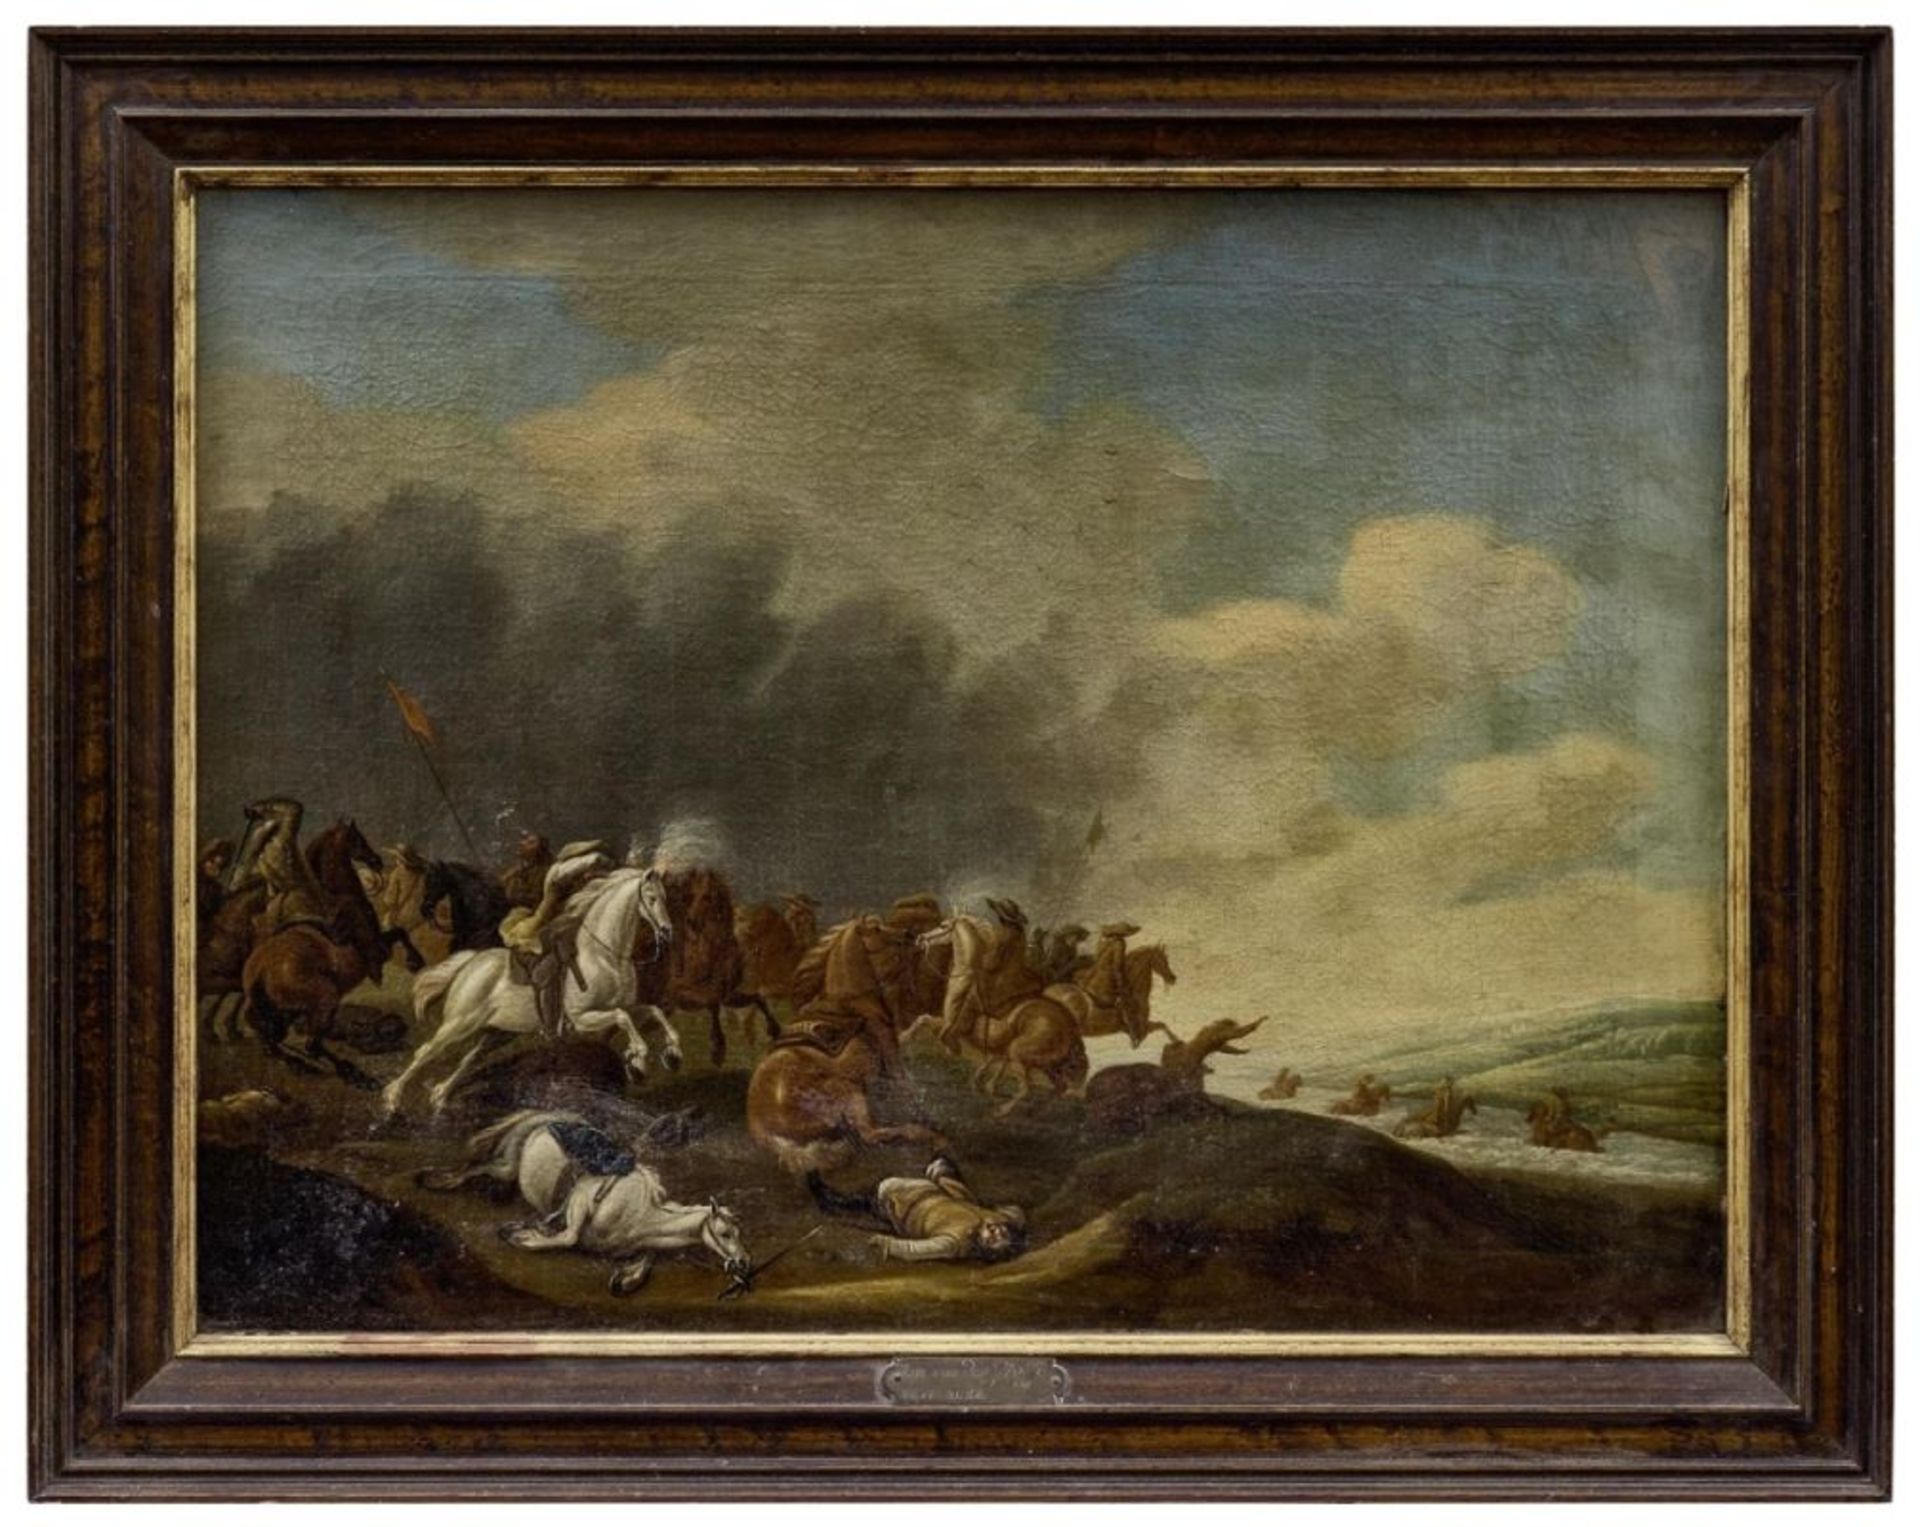 Flusslandschaft mit Reitergefecht, Niederländischer Meister des 17. Jahrhunderts